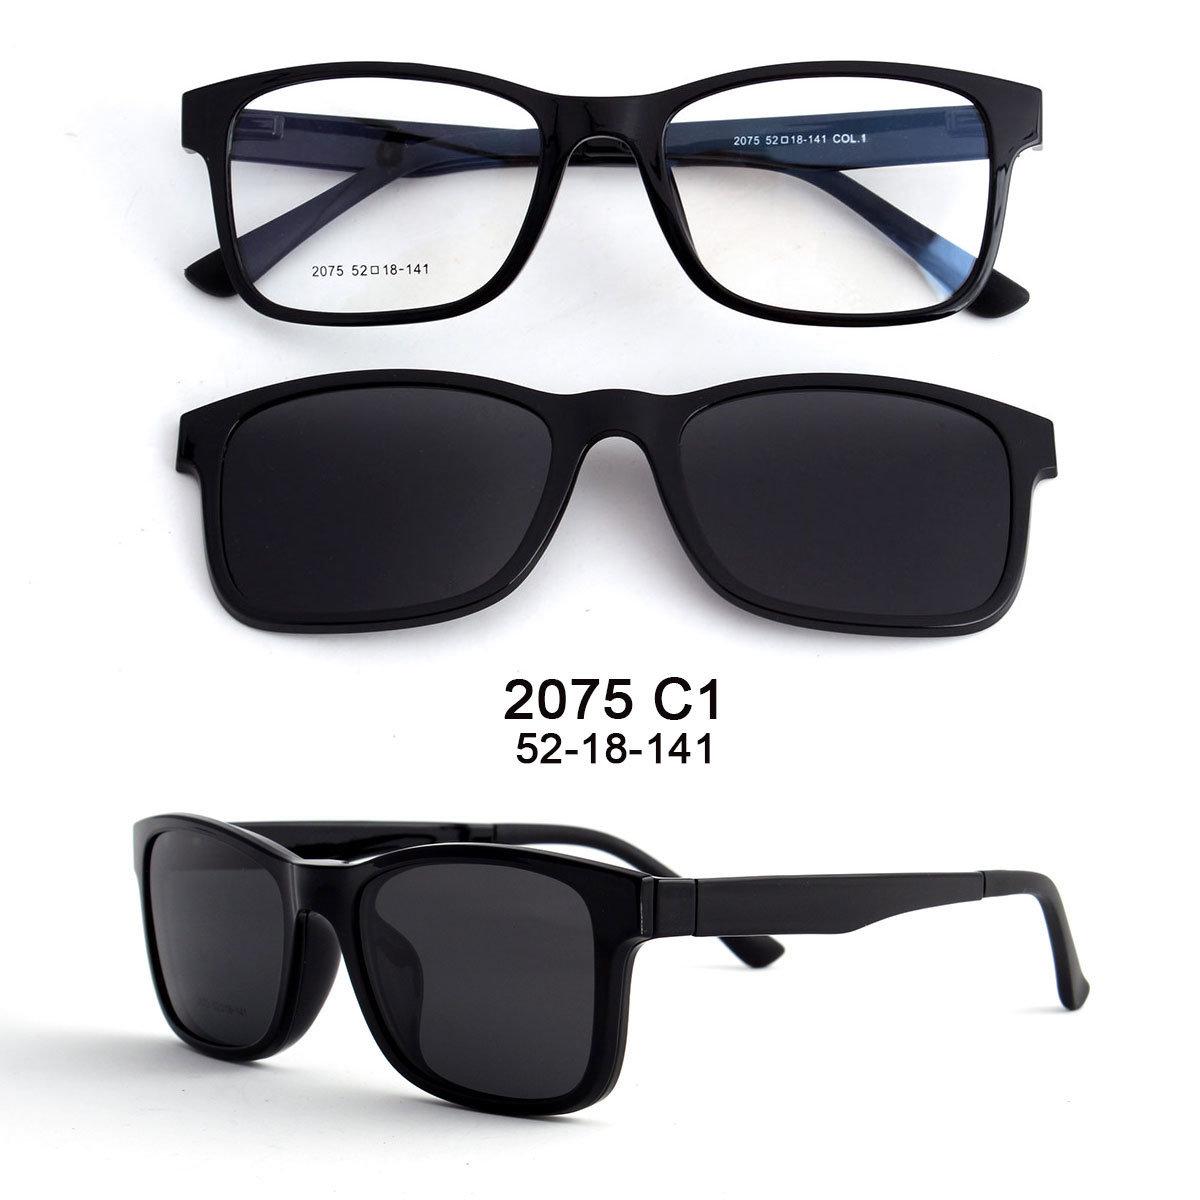 Birajte sunčane naočale koje pružaju potpunu zaštitu od UV zračenja - Avaz